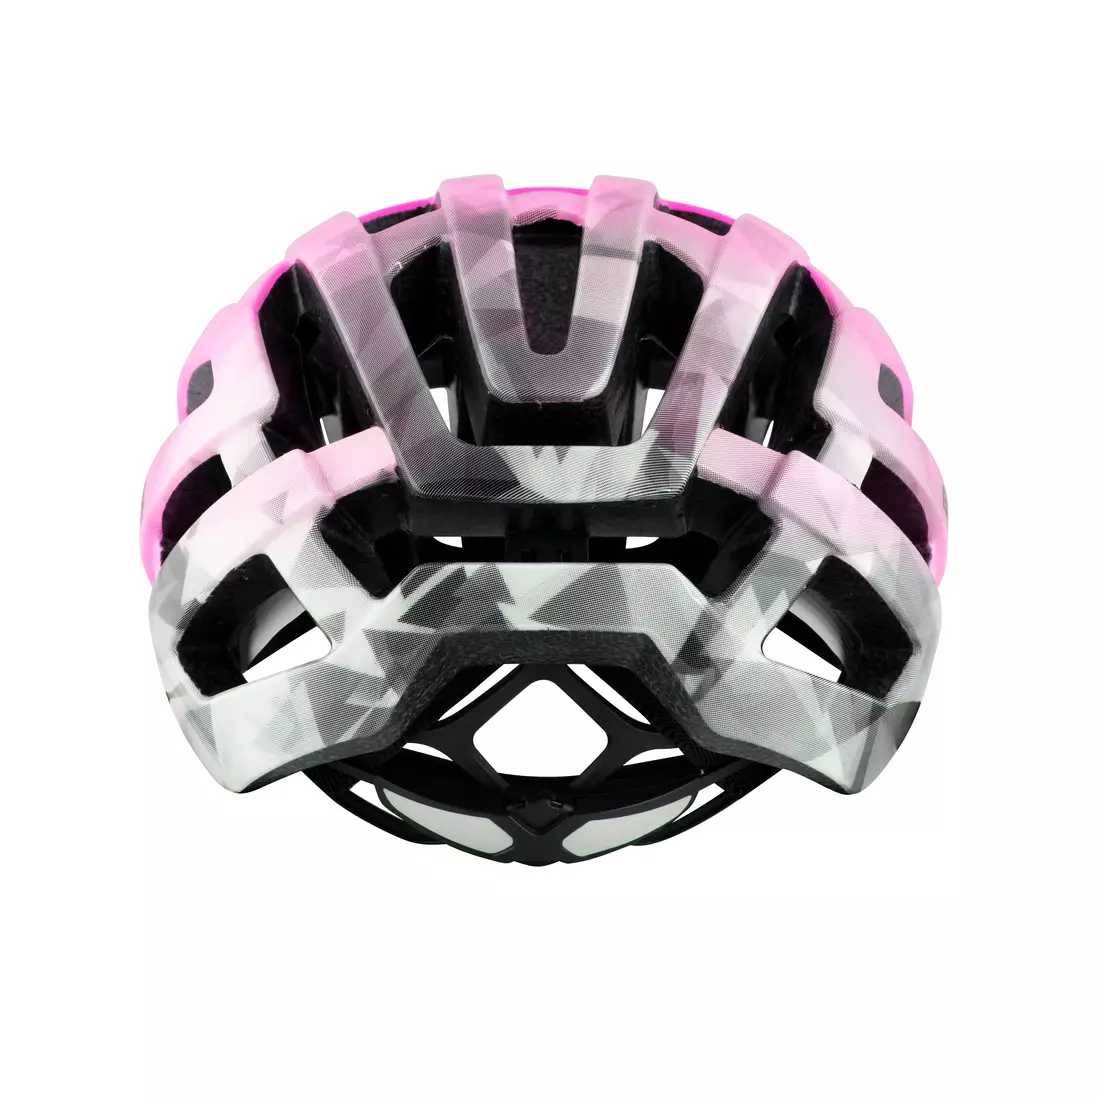 FORCE road bike helmet HAWK black/pink 902777